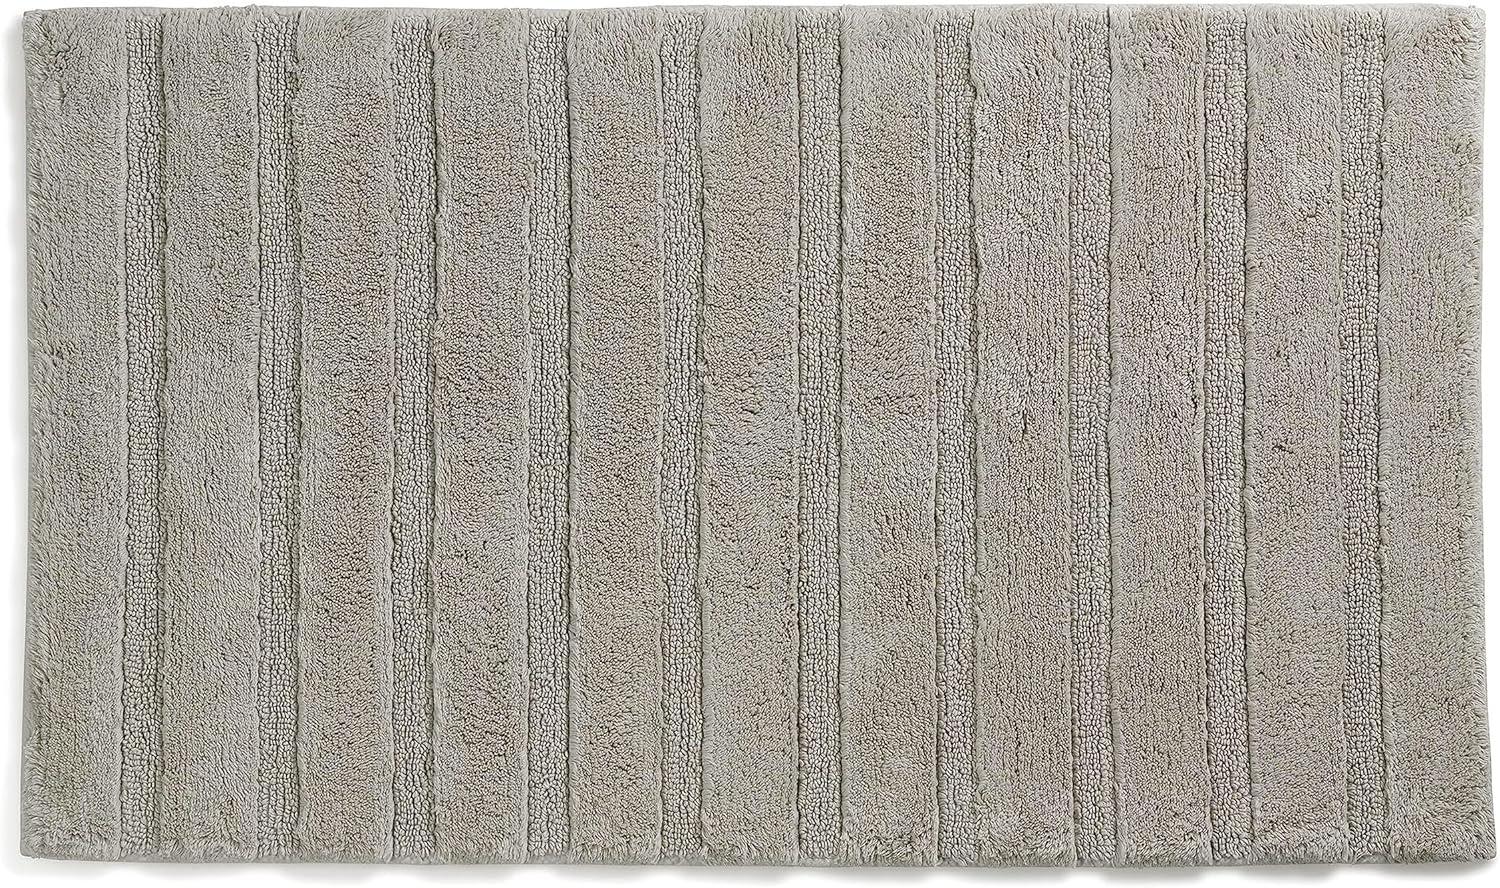 Kela Badematte Megan, 80 cm x 50 cm, 100% Baumwolle, Silbergrau, rutschhemmend, waschbar bis 30° C, geeignet für Fußbodenheizung, 23585 Bild 1